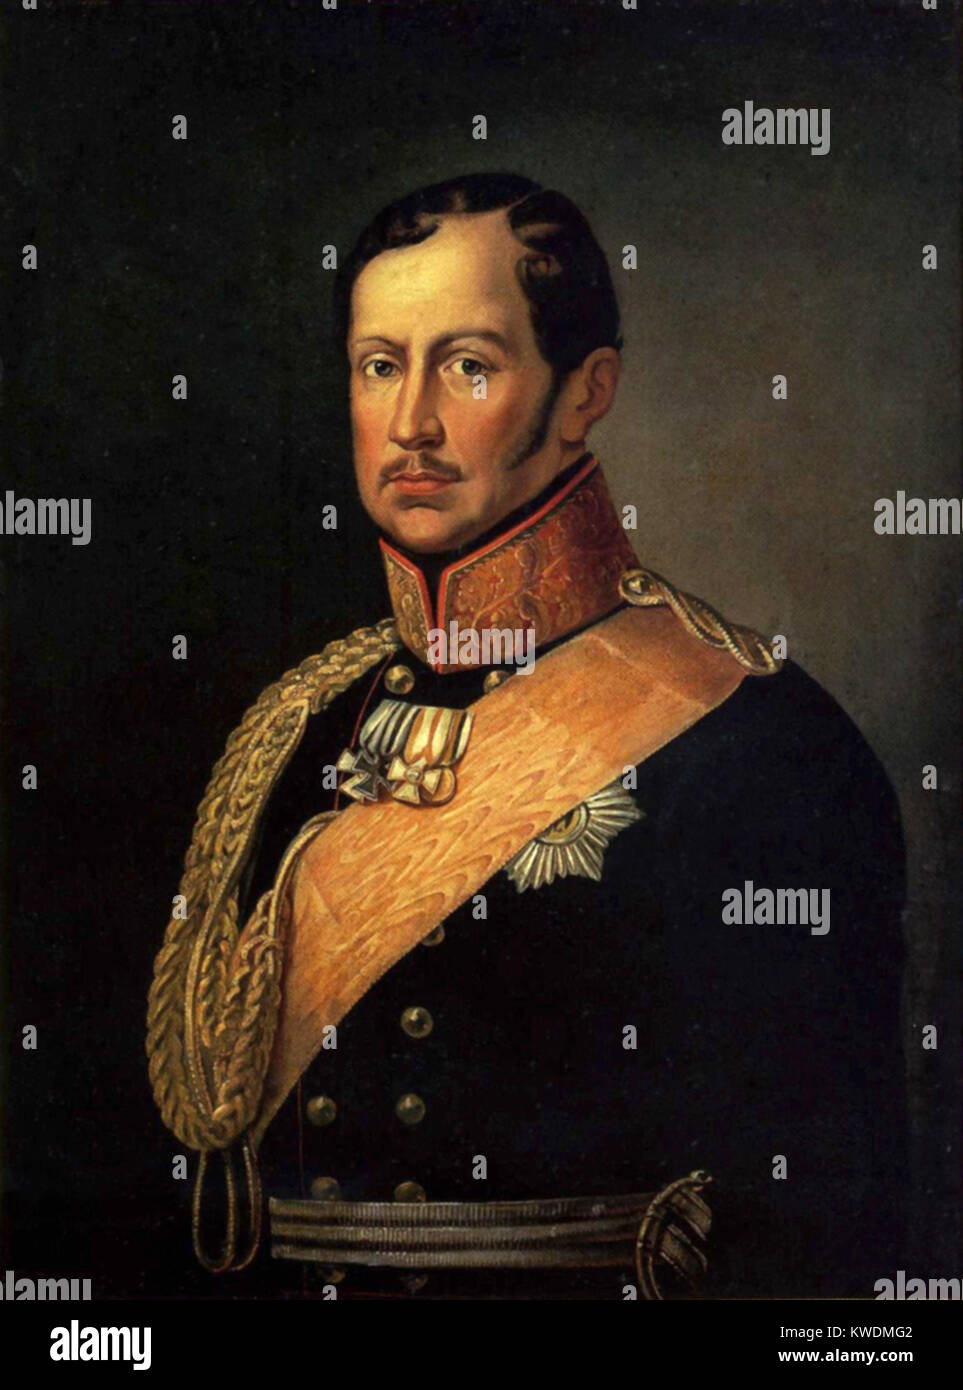 Frédéric-guillaume III de Prusse, roi de Prusse de 1797 à 1840 Banque D'Images